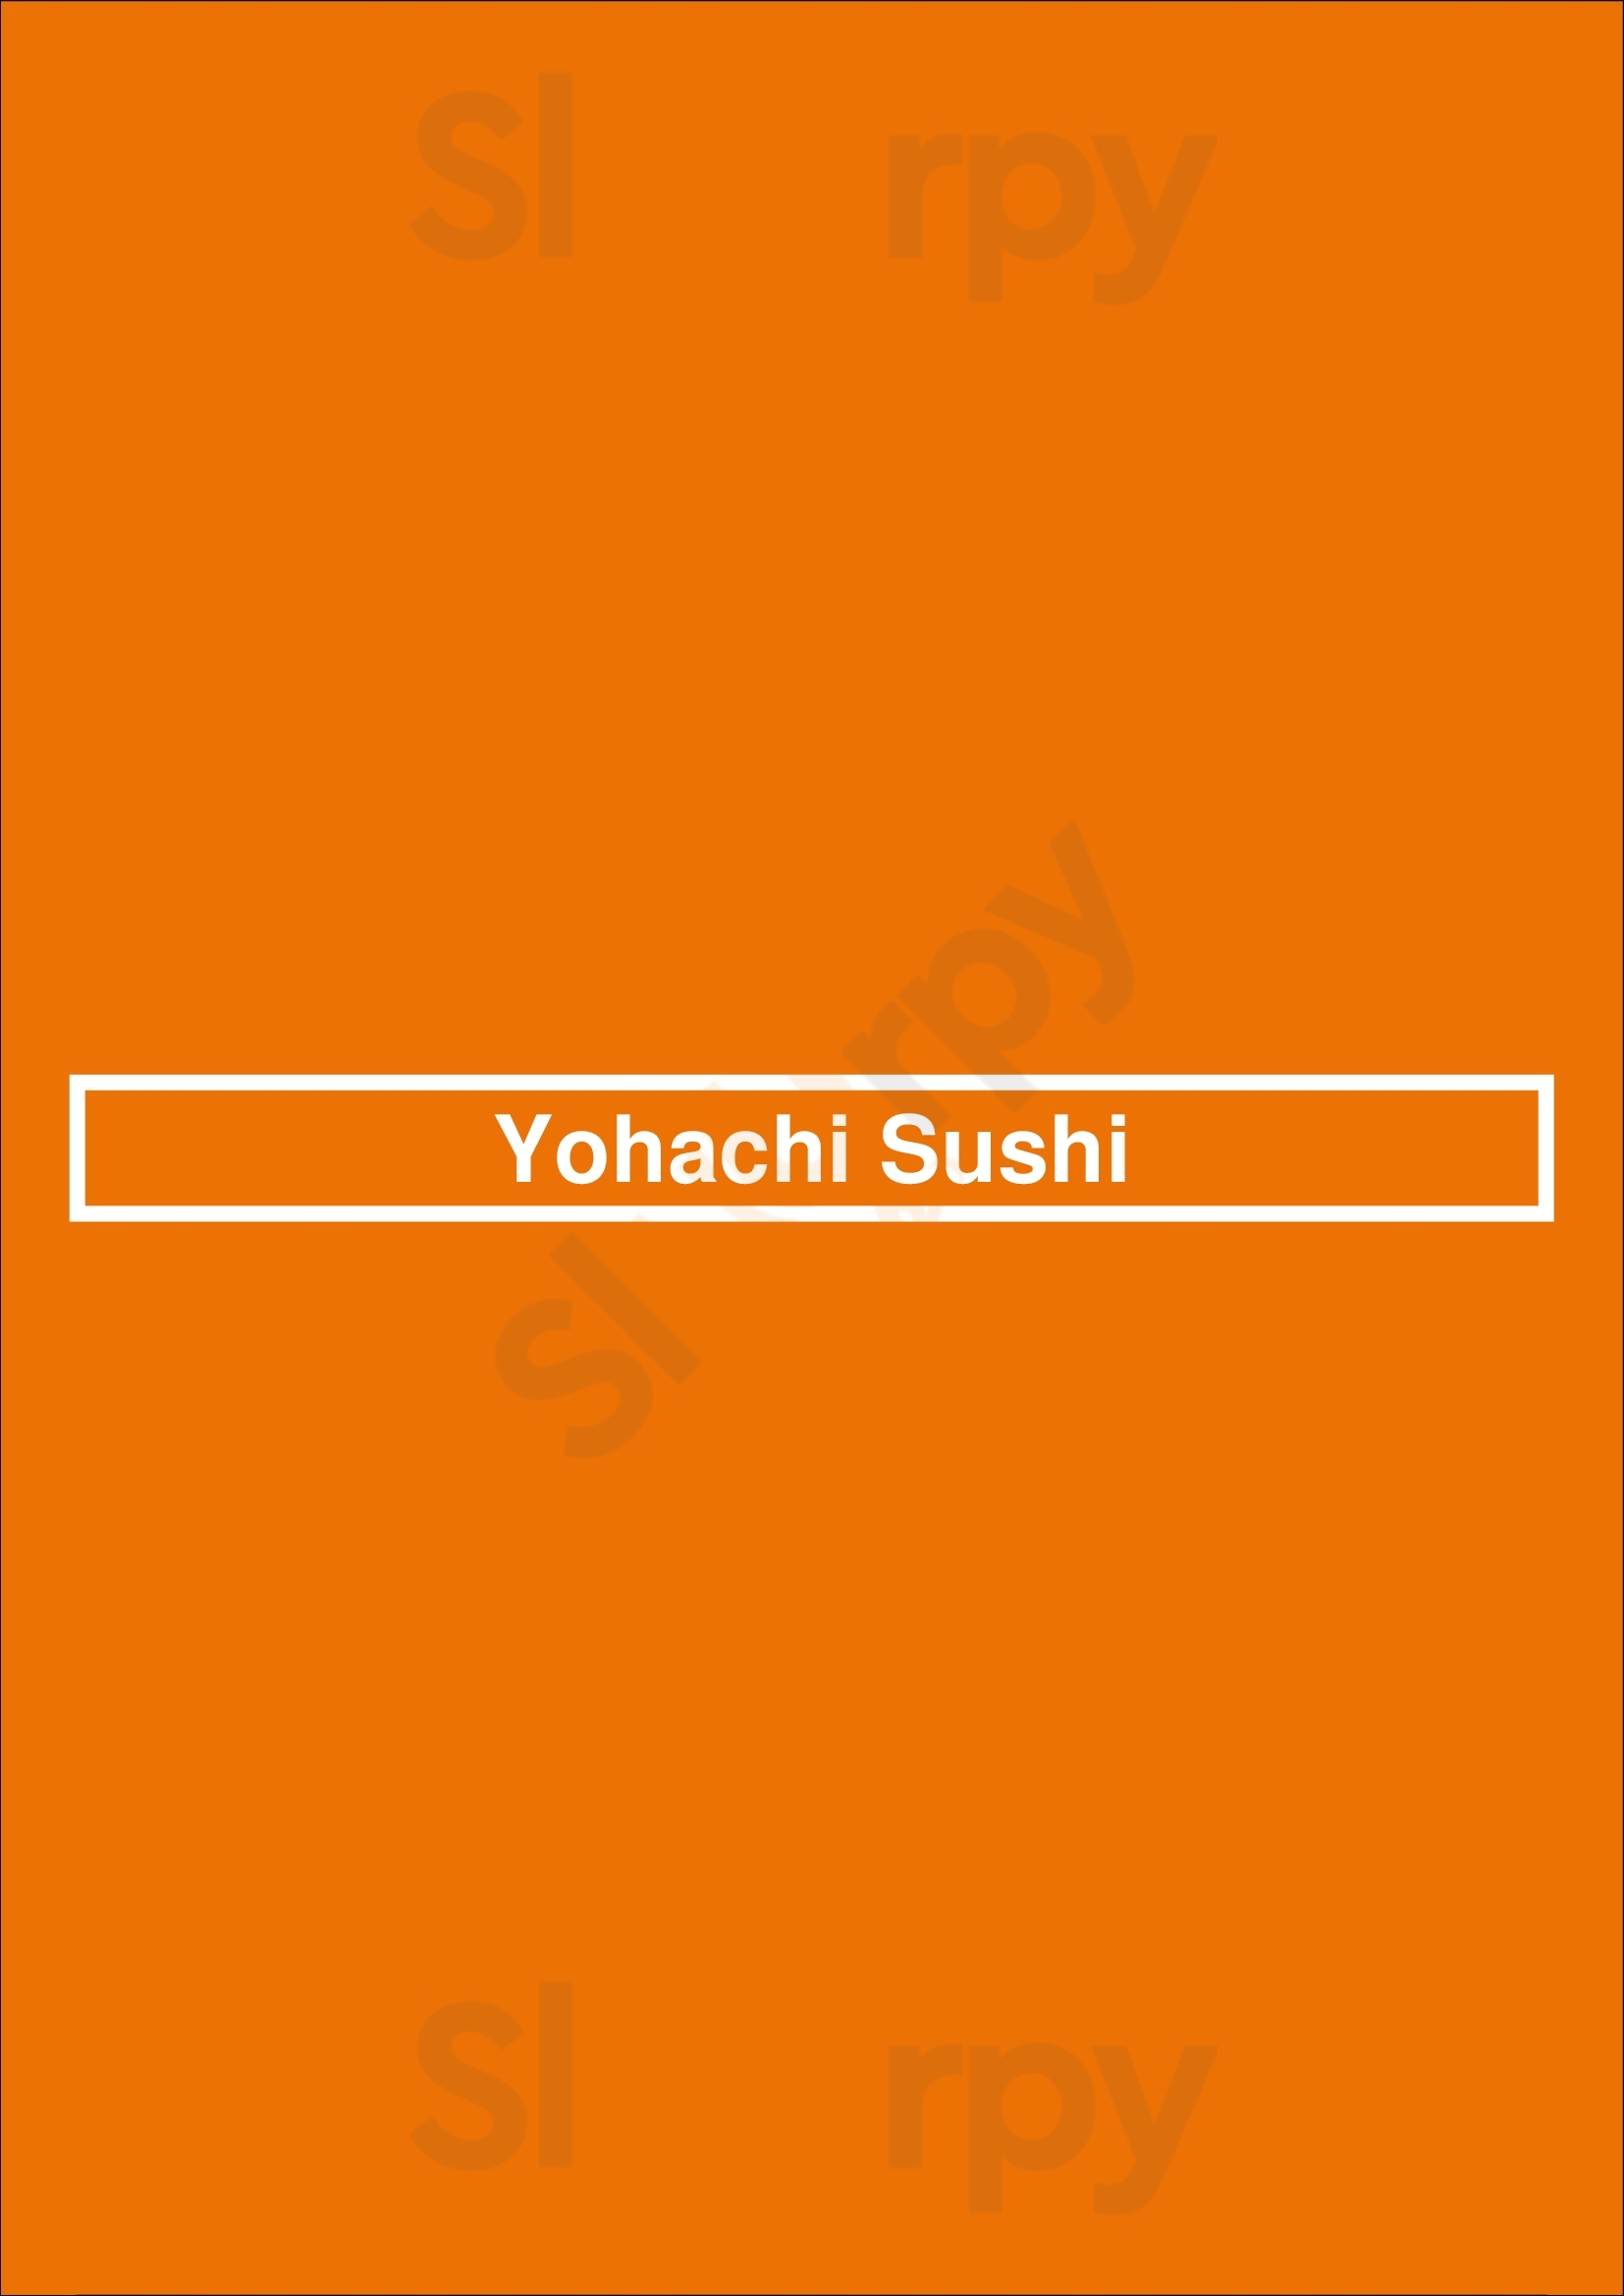 Yohachi Sushi North Vancouver Menu - 1